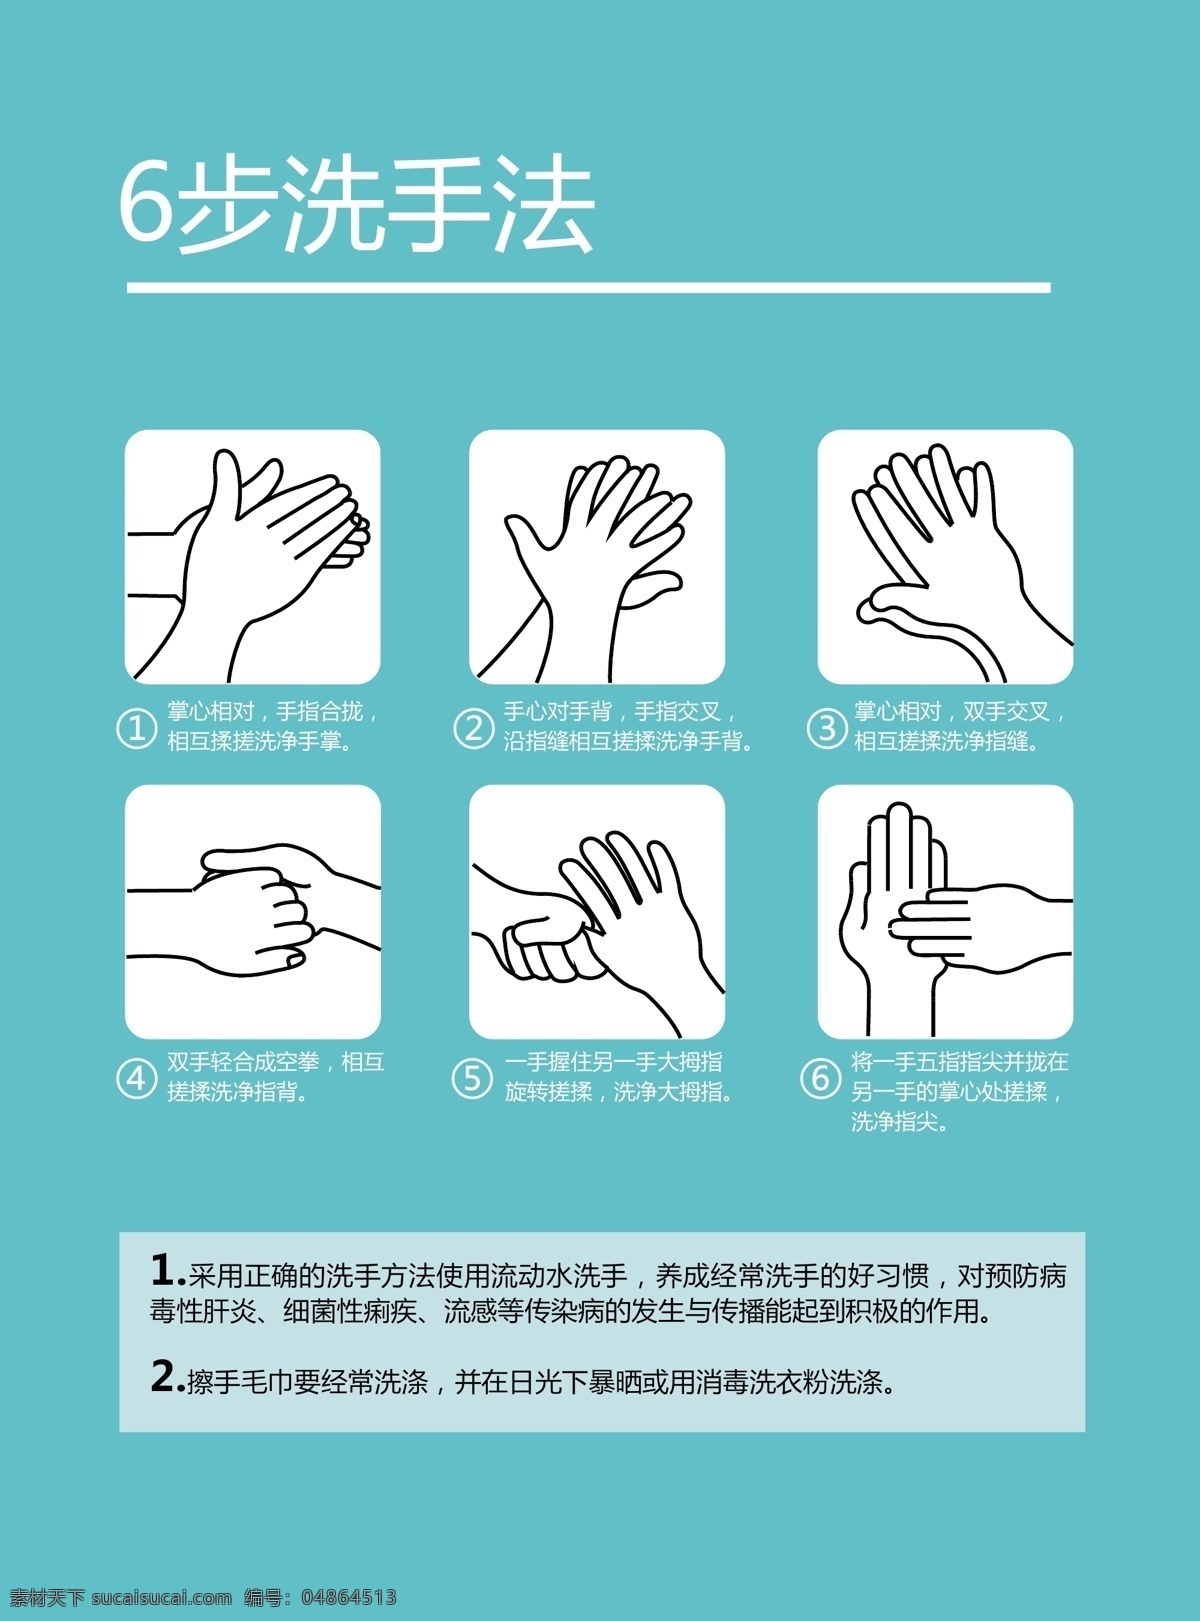 6步洗手法 优化版 步走 标识 图解 洗手 洗手法